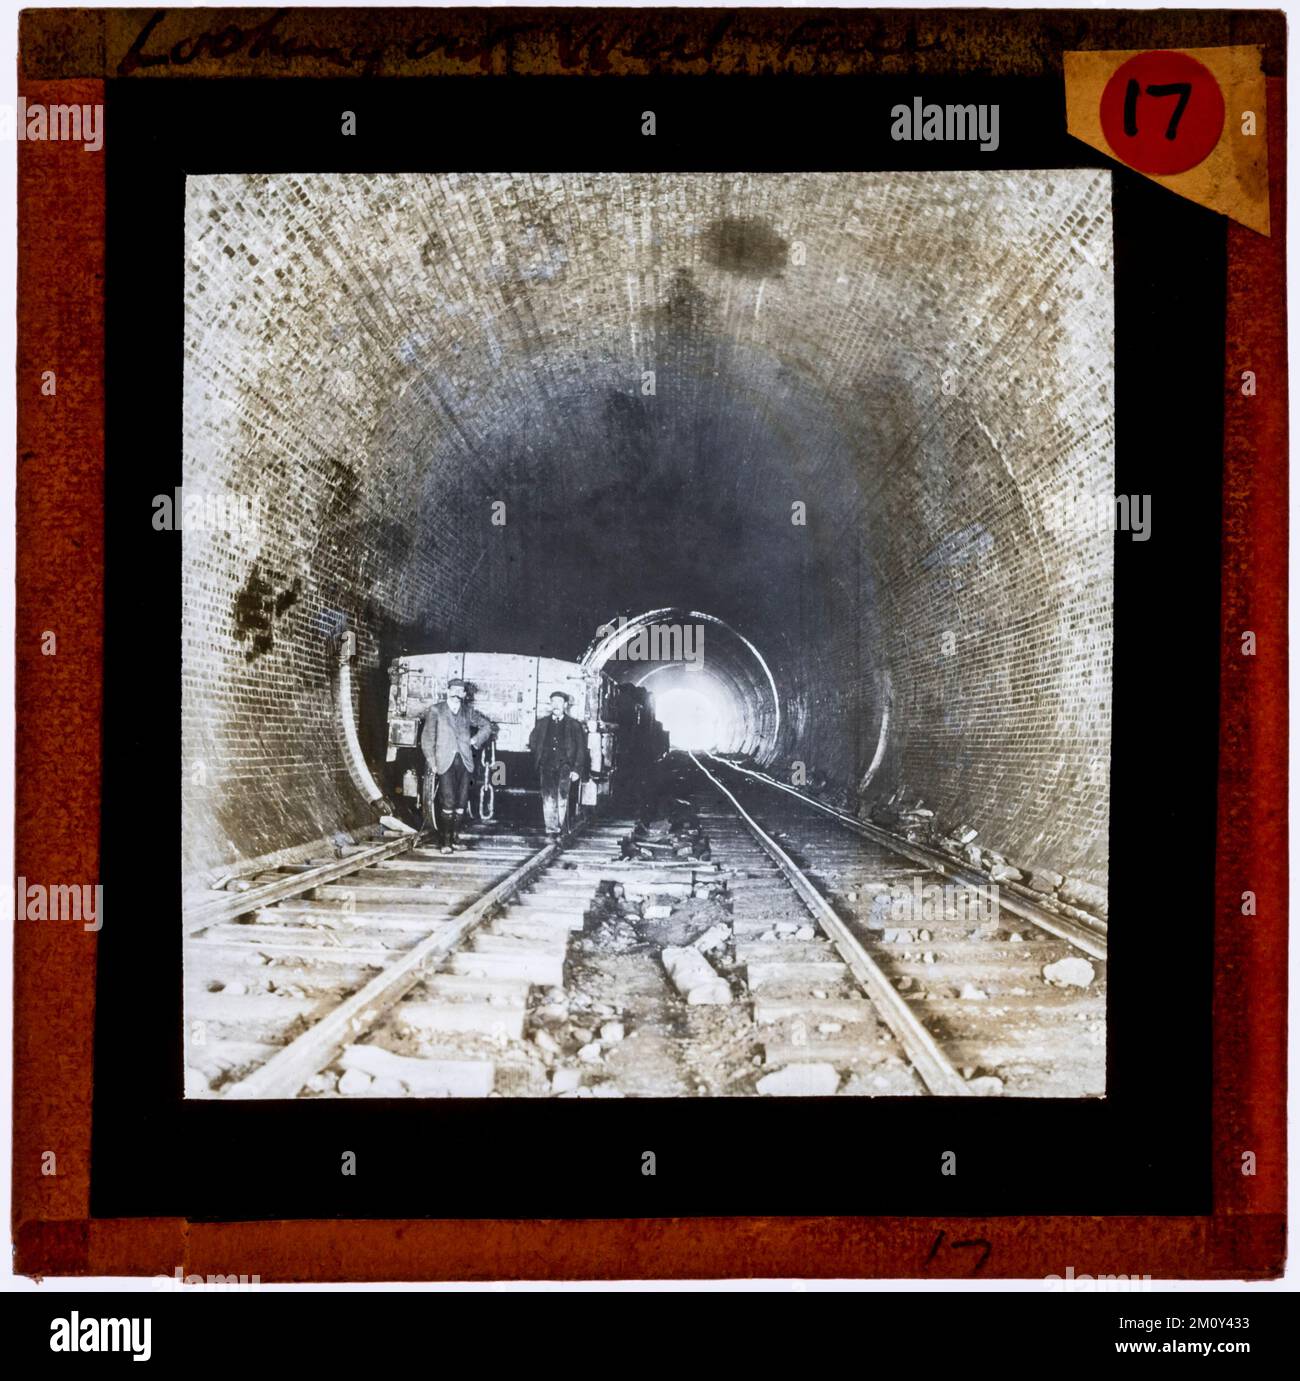 Digitalisierte Archivkopie eines Original-Glas-Magic-Lantern-Objektträgers. Fotograf unbekannt. Zeigt Arbeiter während des Baus des Chipping Sodbury Tunnels auf der Great Western Railway. Jetzt Teil der Hauptlinie von Südwales. c 1900. Stockfoto